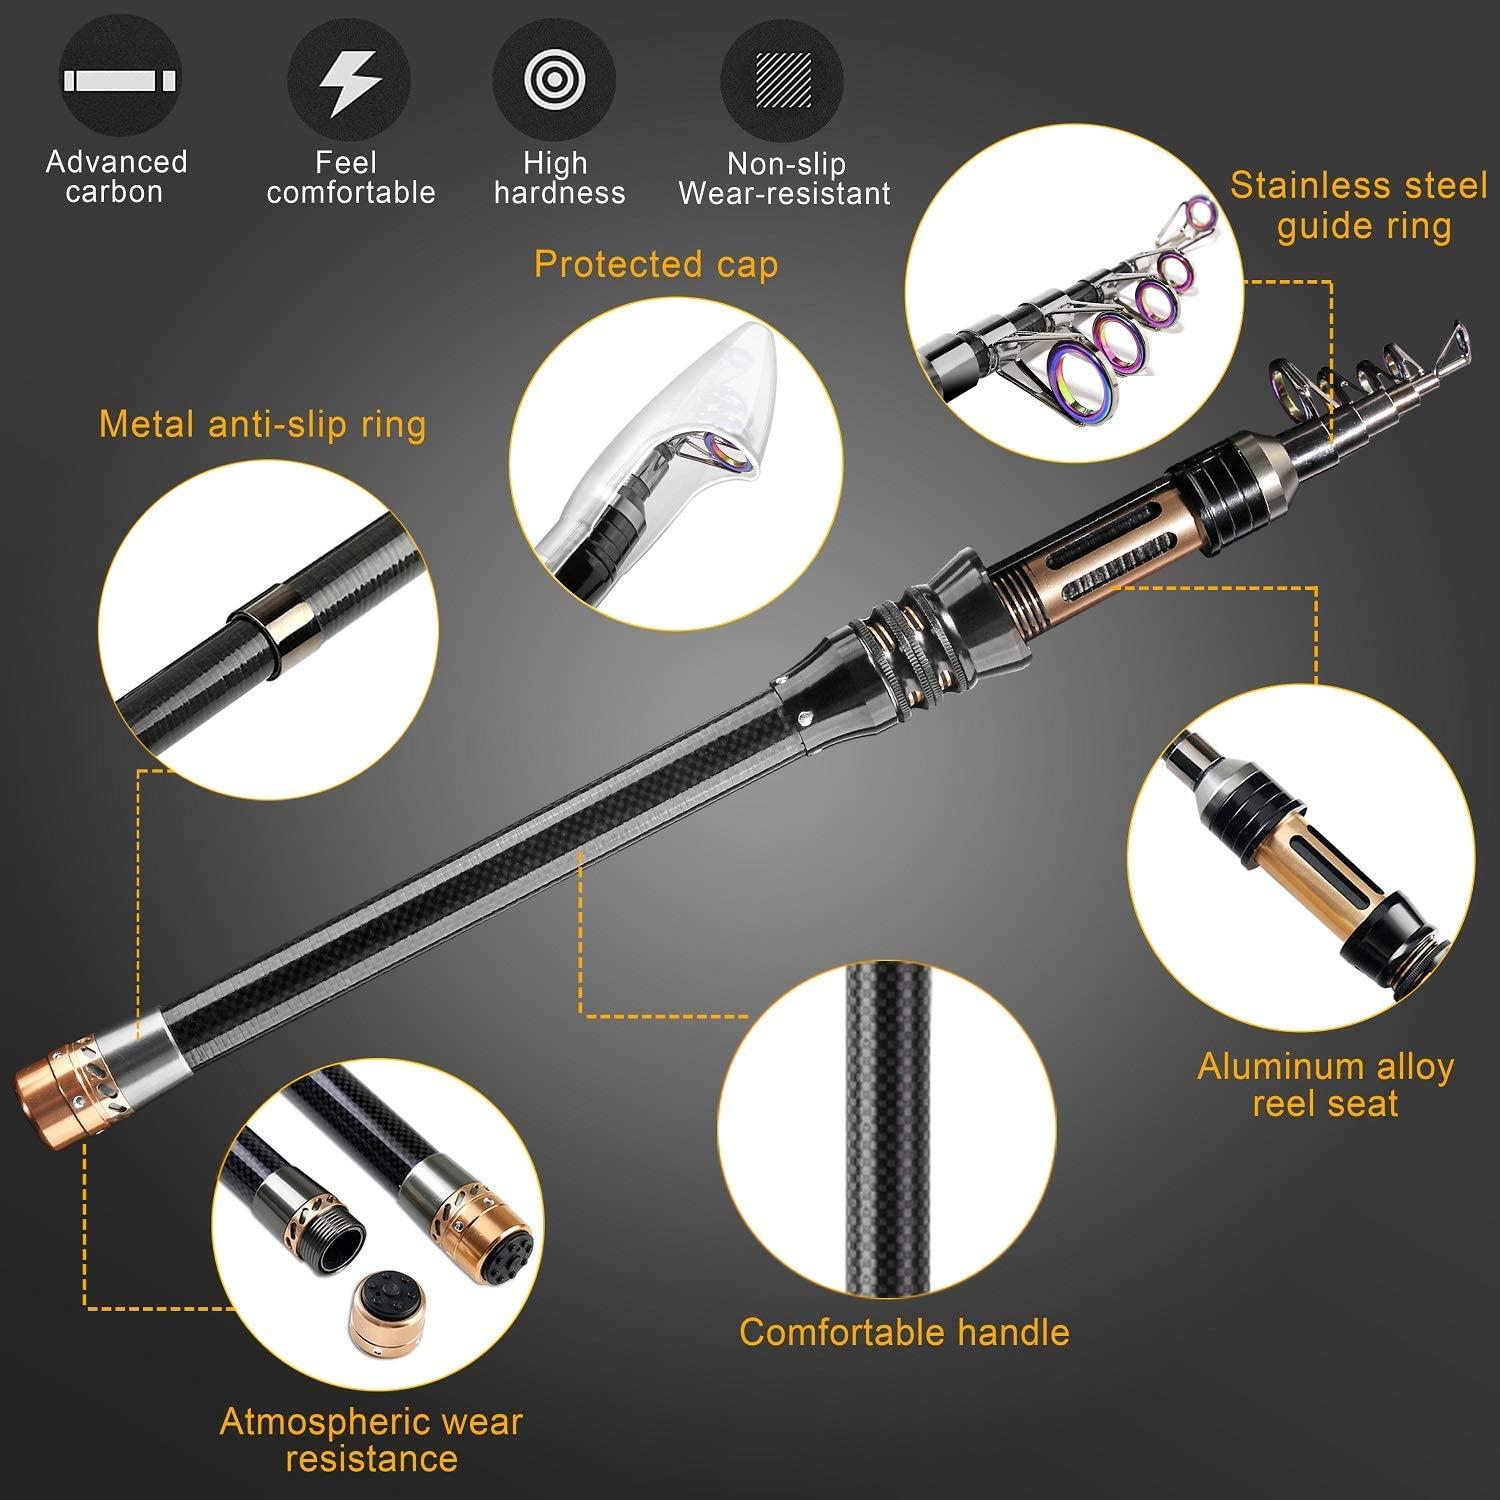 BlueFire Fishing Rod Kit, Carbon Fiber Telescopic Fishing Pole and